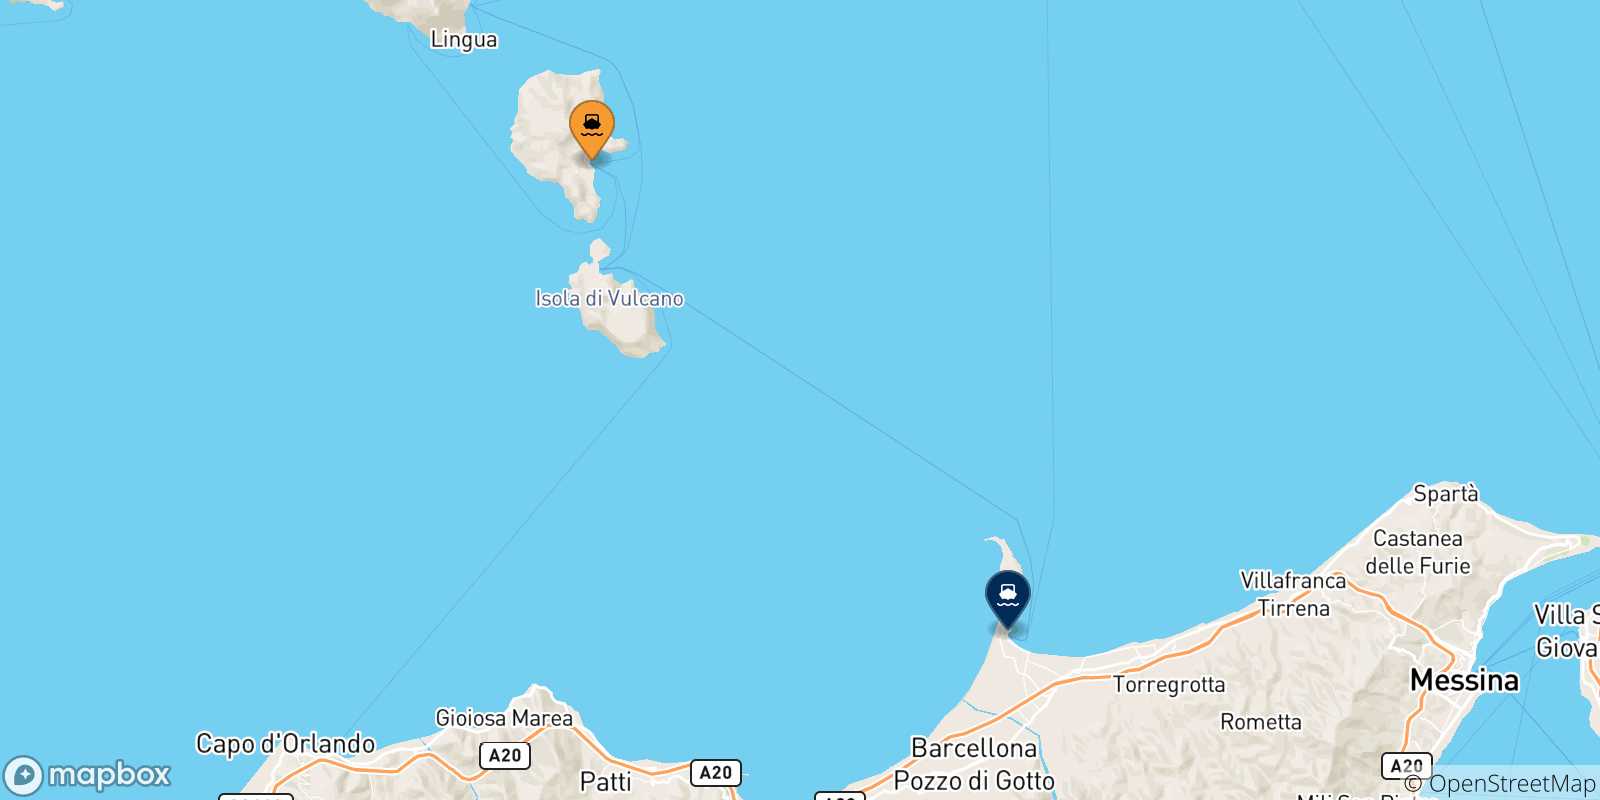 Mappa delle possibili rotte tra Lipari e la Sicilia